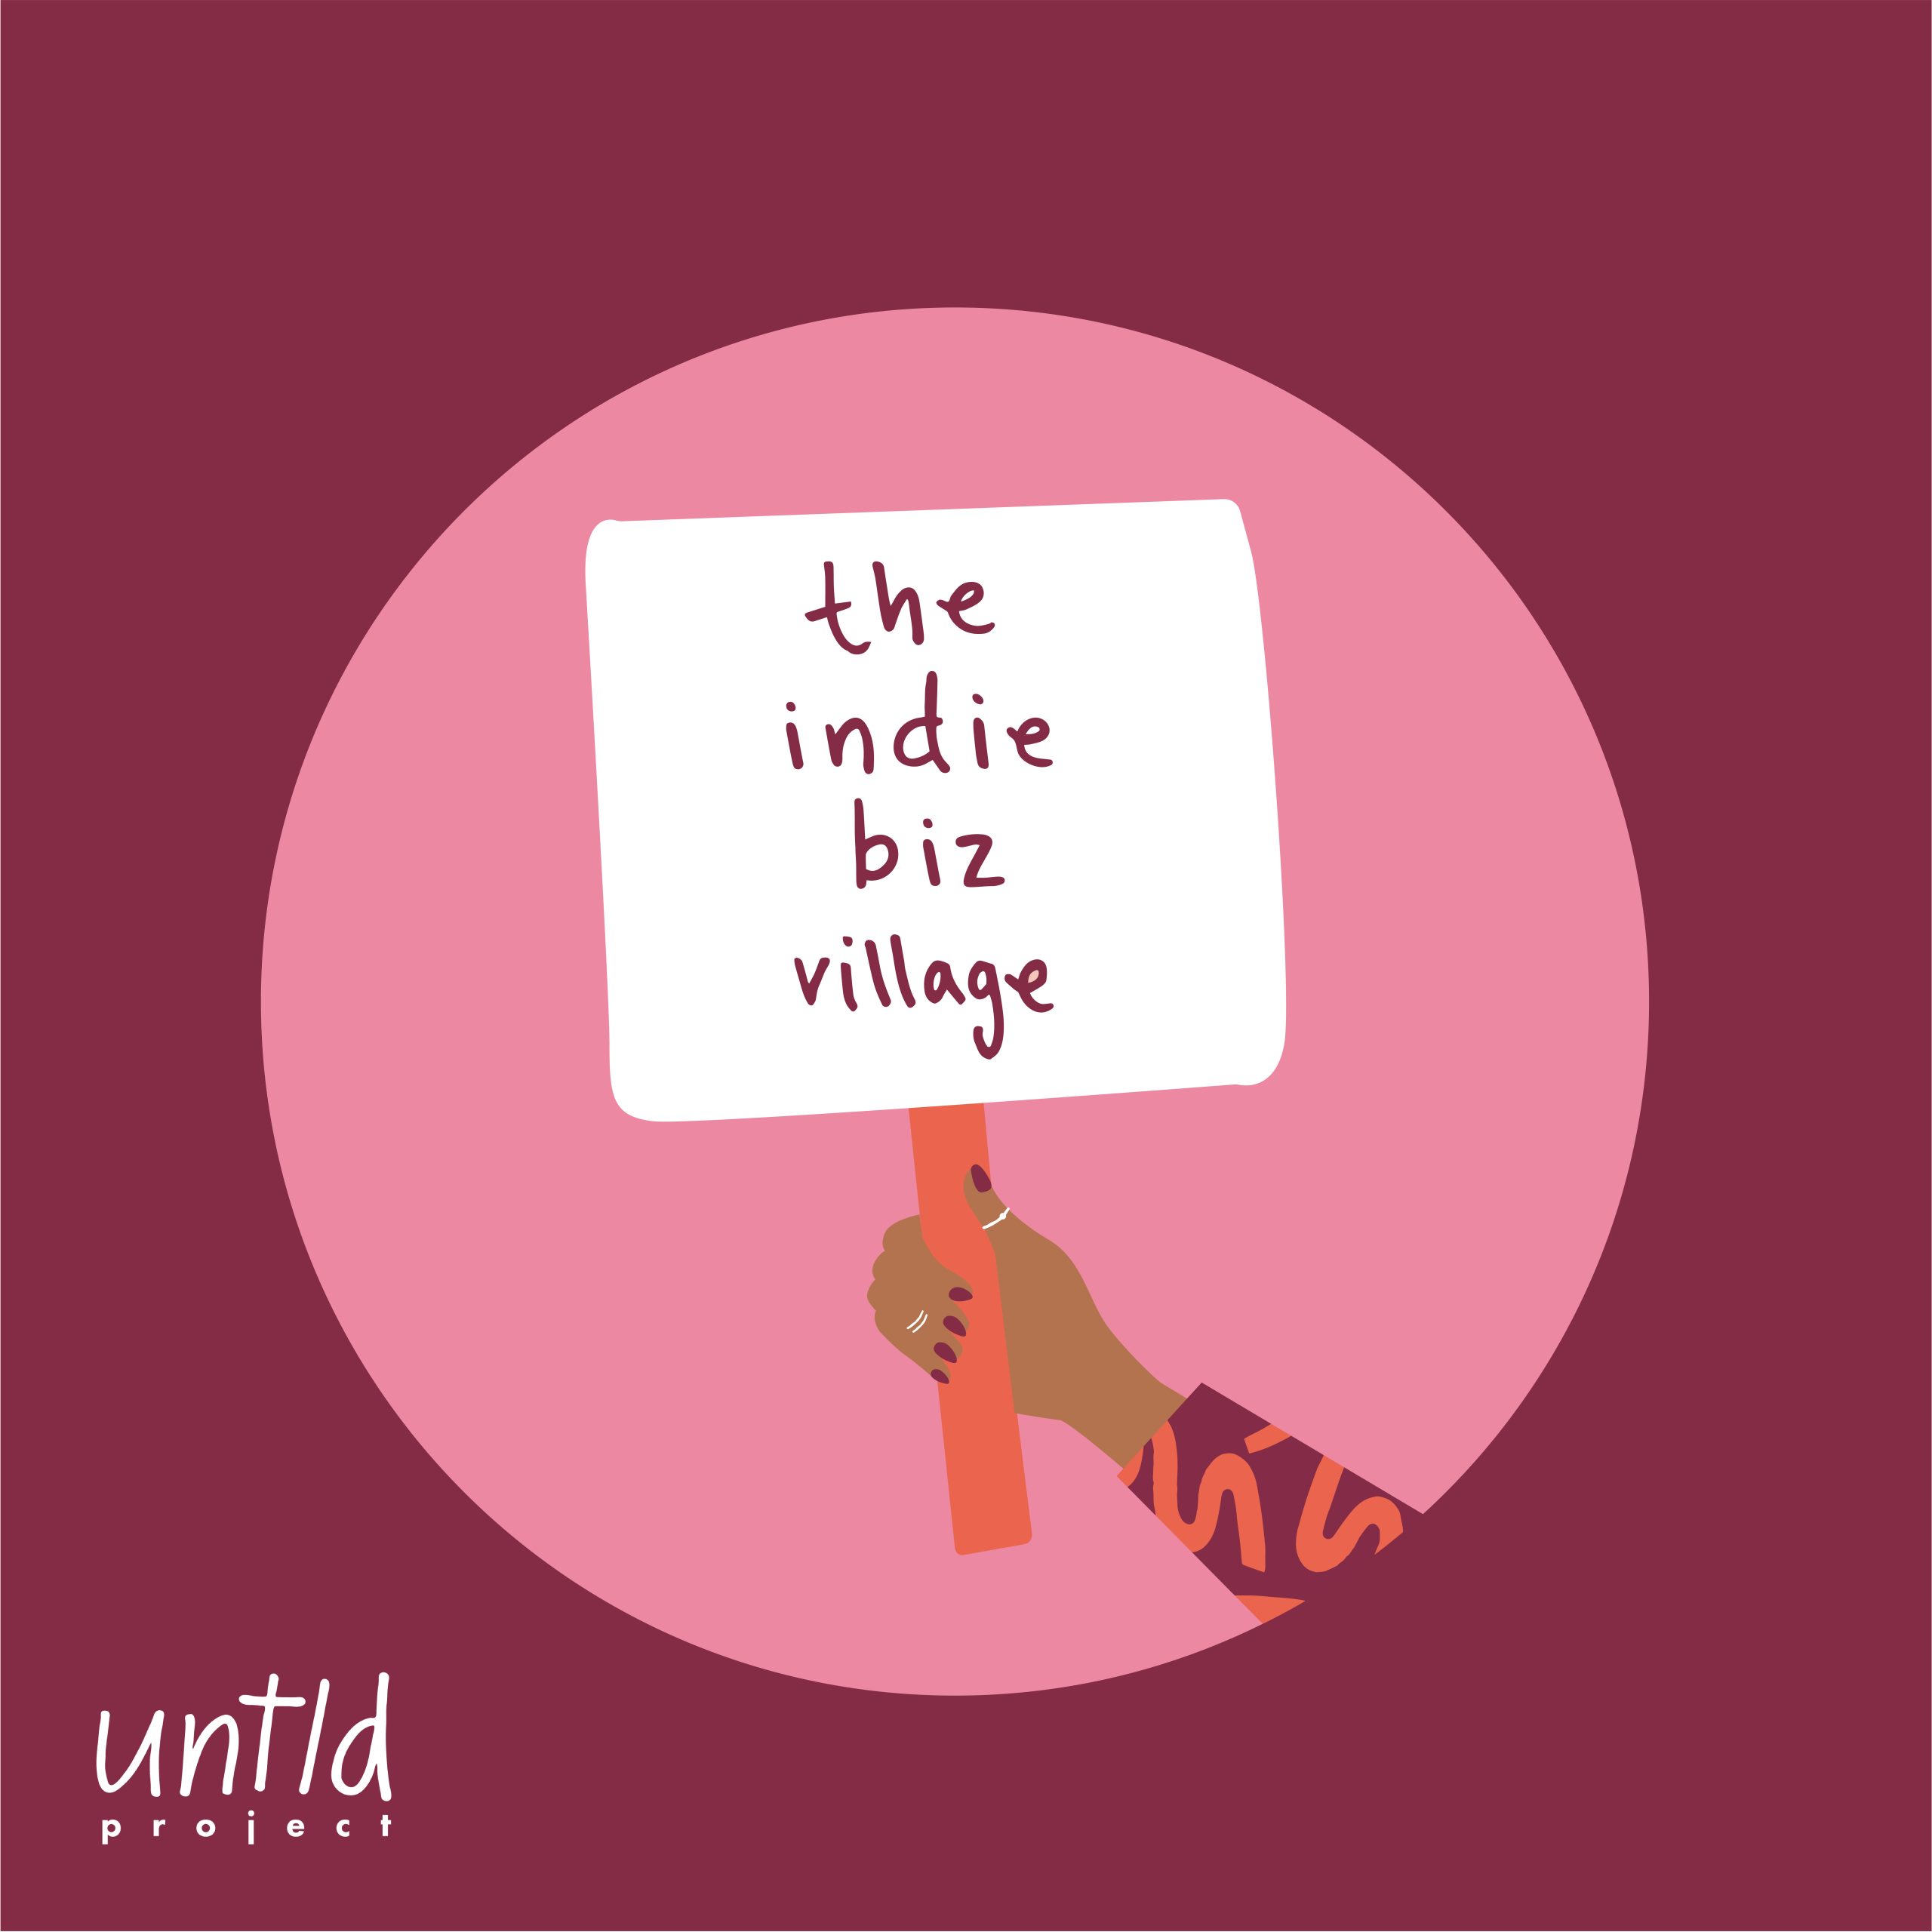 Untld Project Indie Biz - Indie Biz Village-14